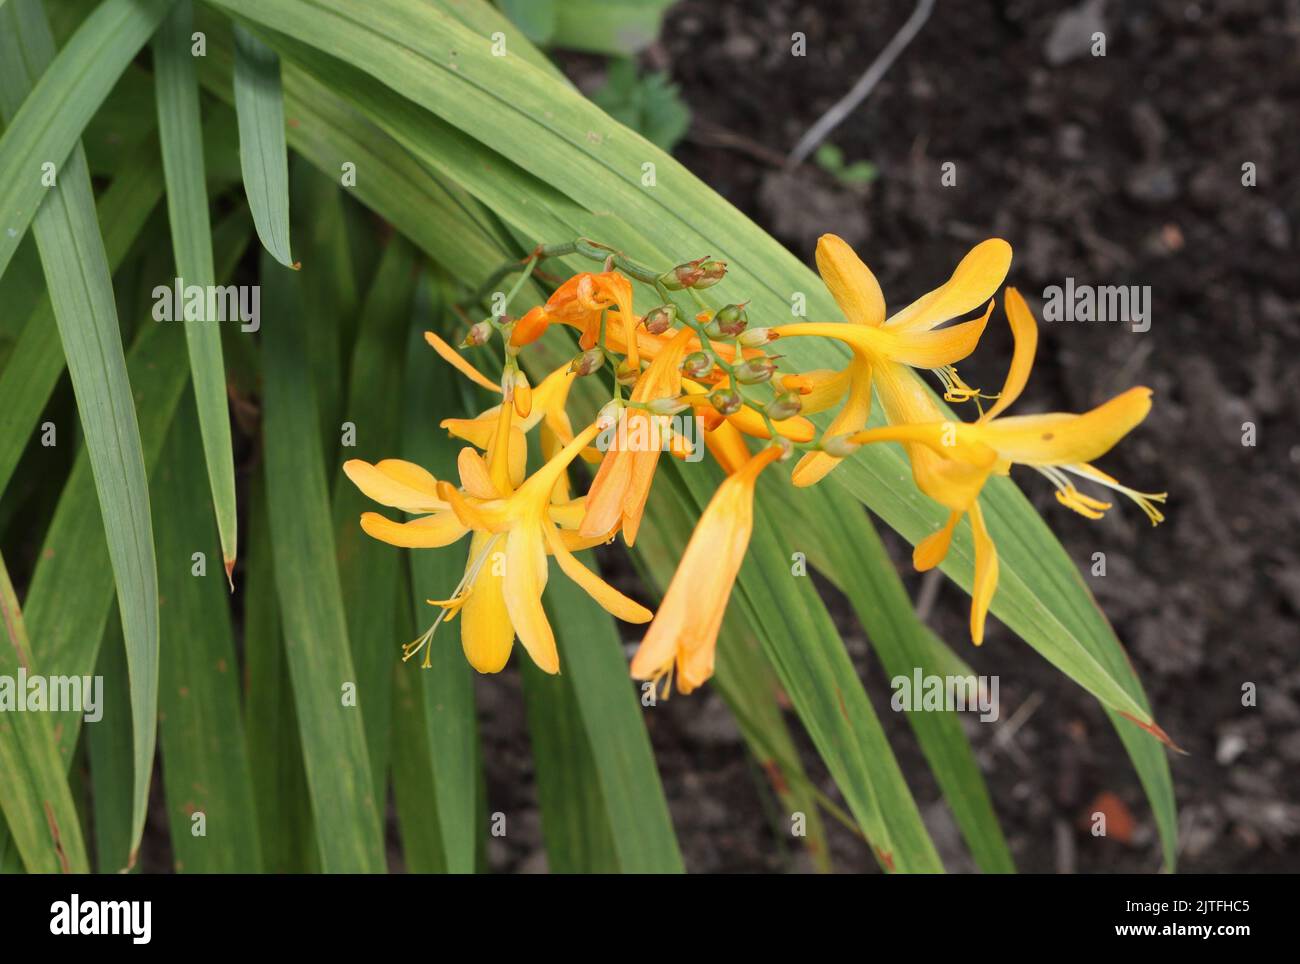 Croscomia, Príncipe de Naranja florece sobre un tallo largo Foto de stock